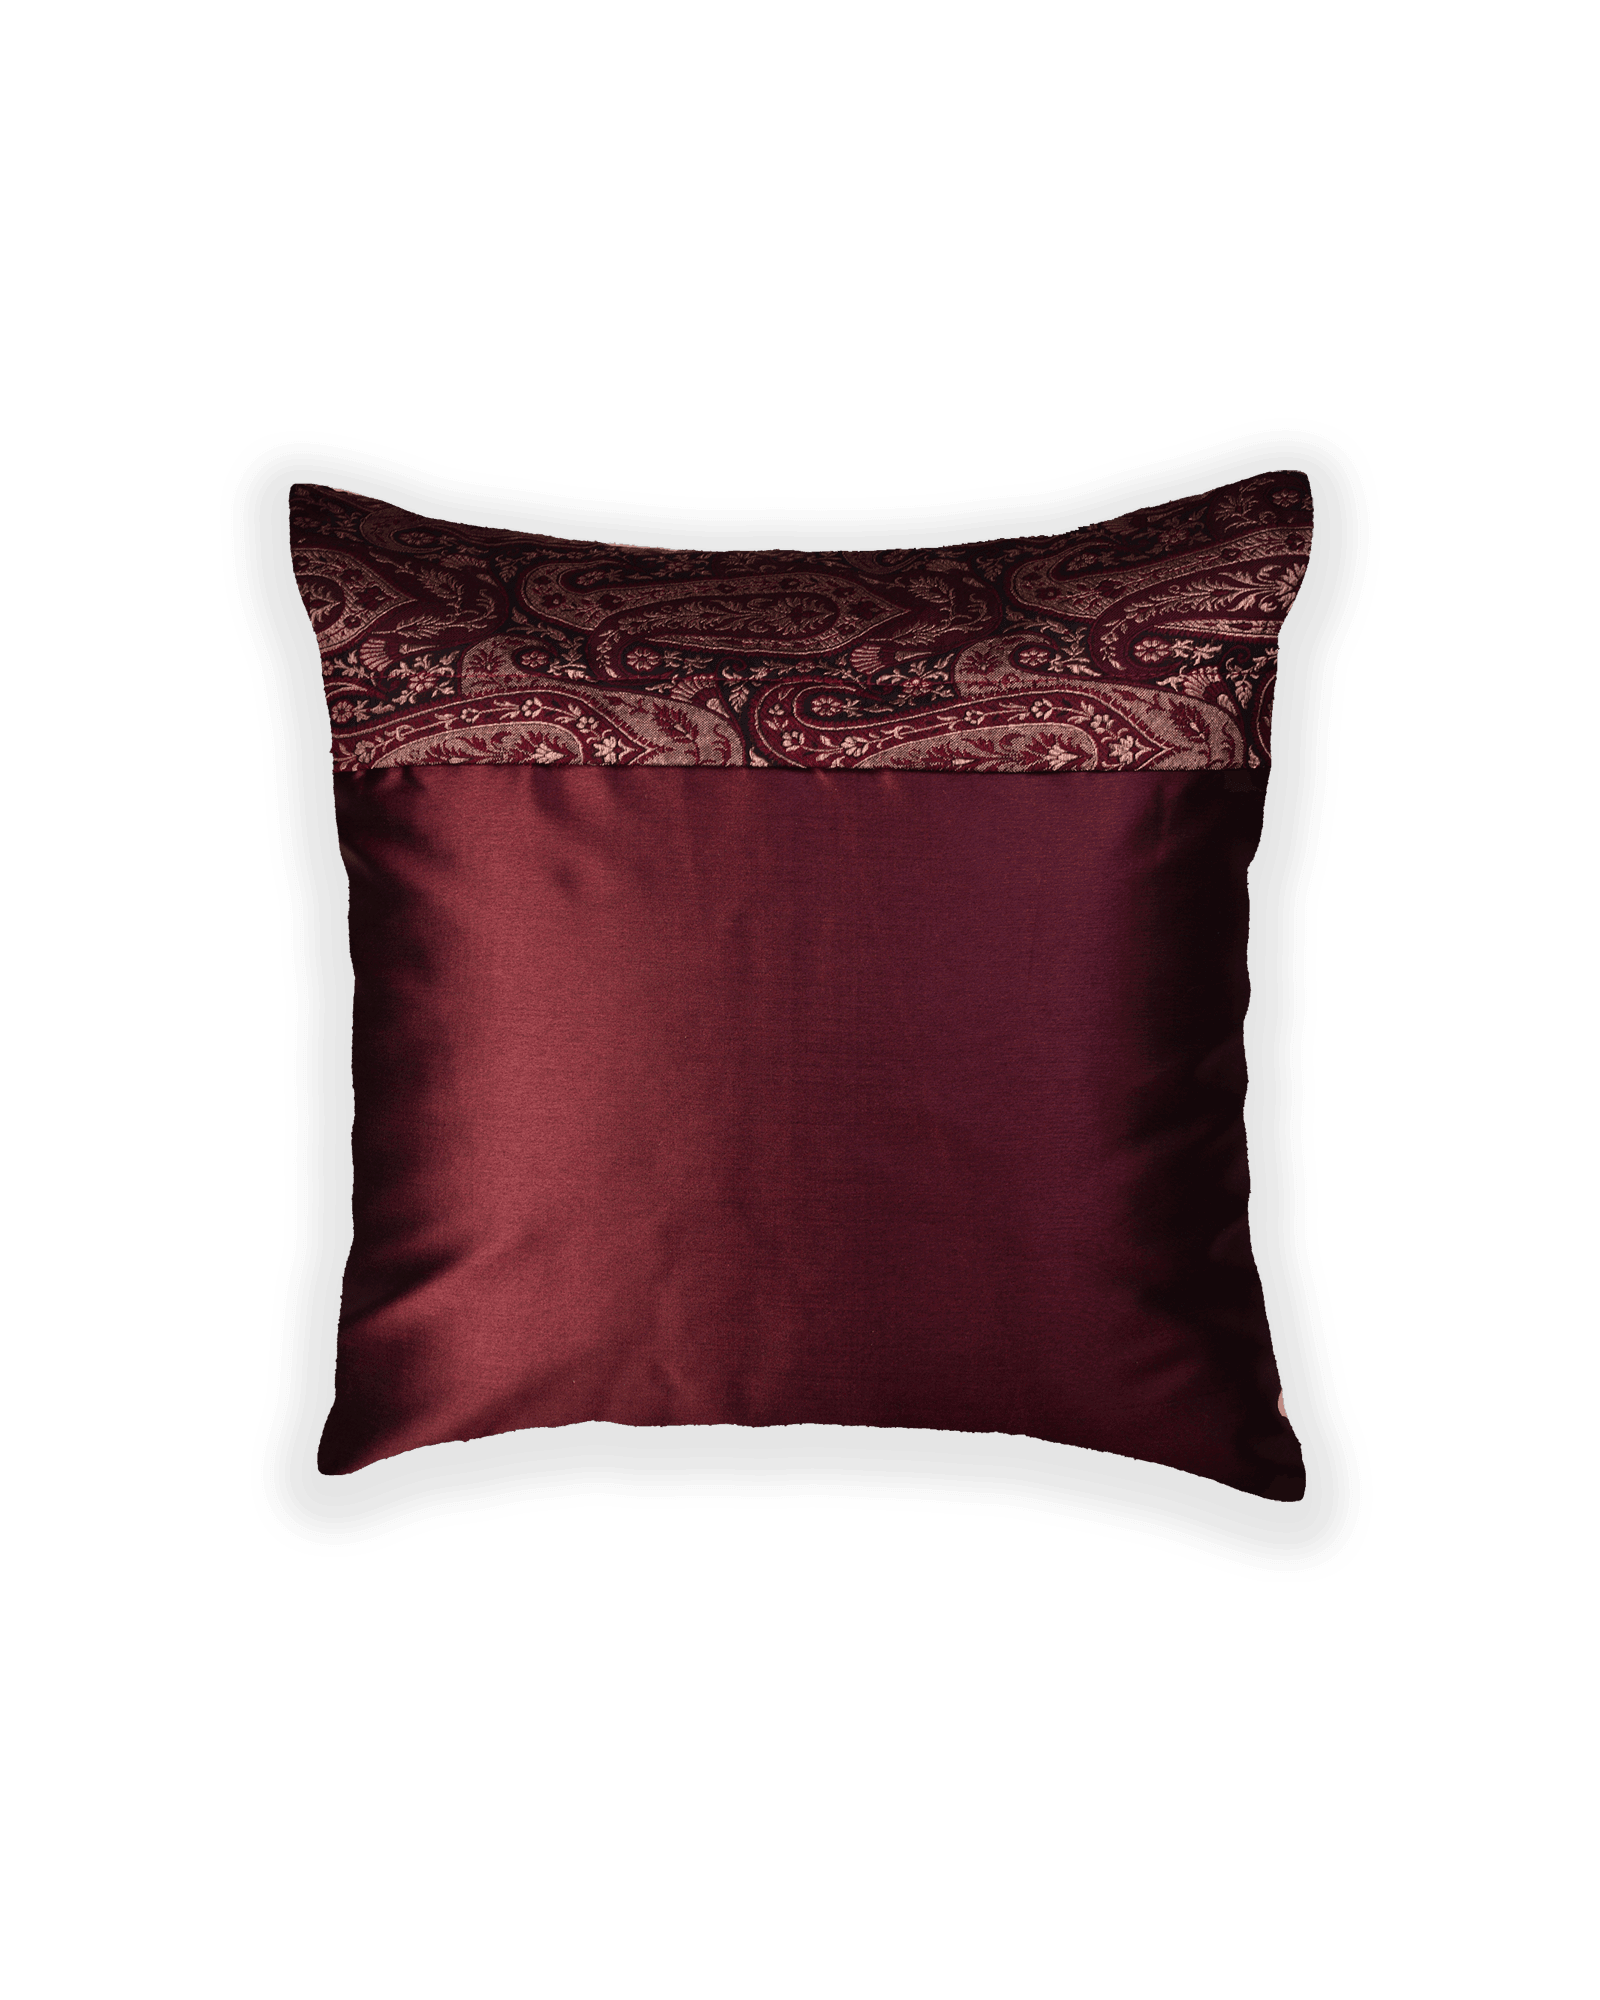 Mahogany Banarasi Brocade Poly Silk Cushion Cover 16" - By HolyWeaves, Benares